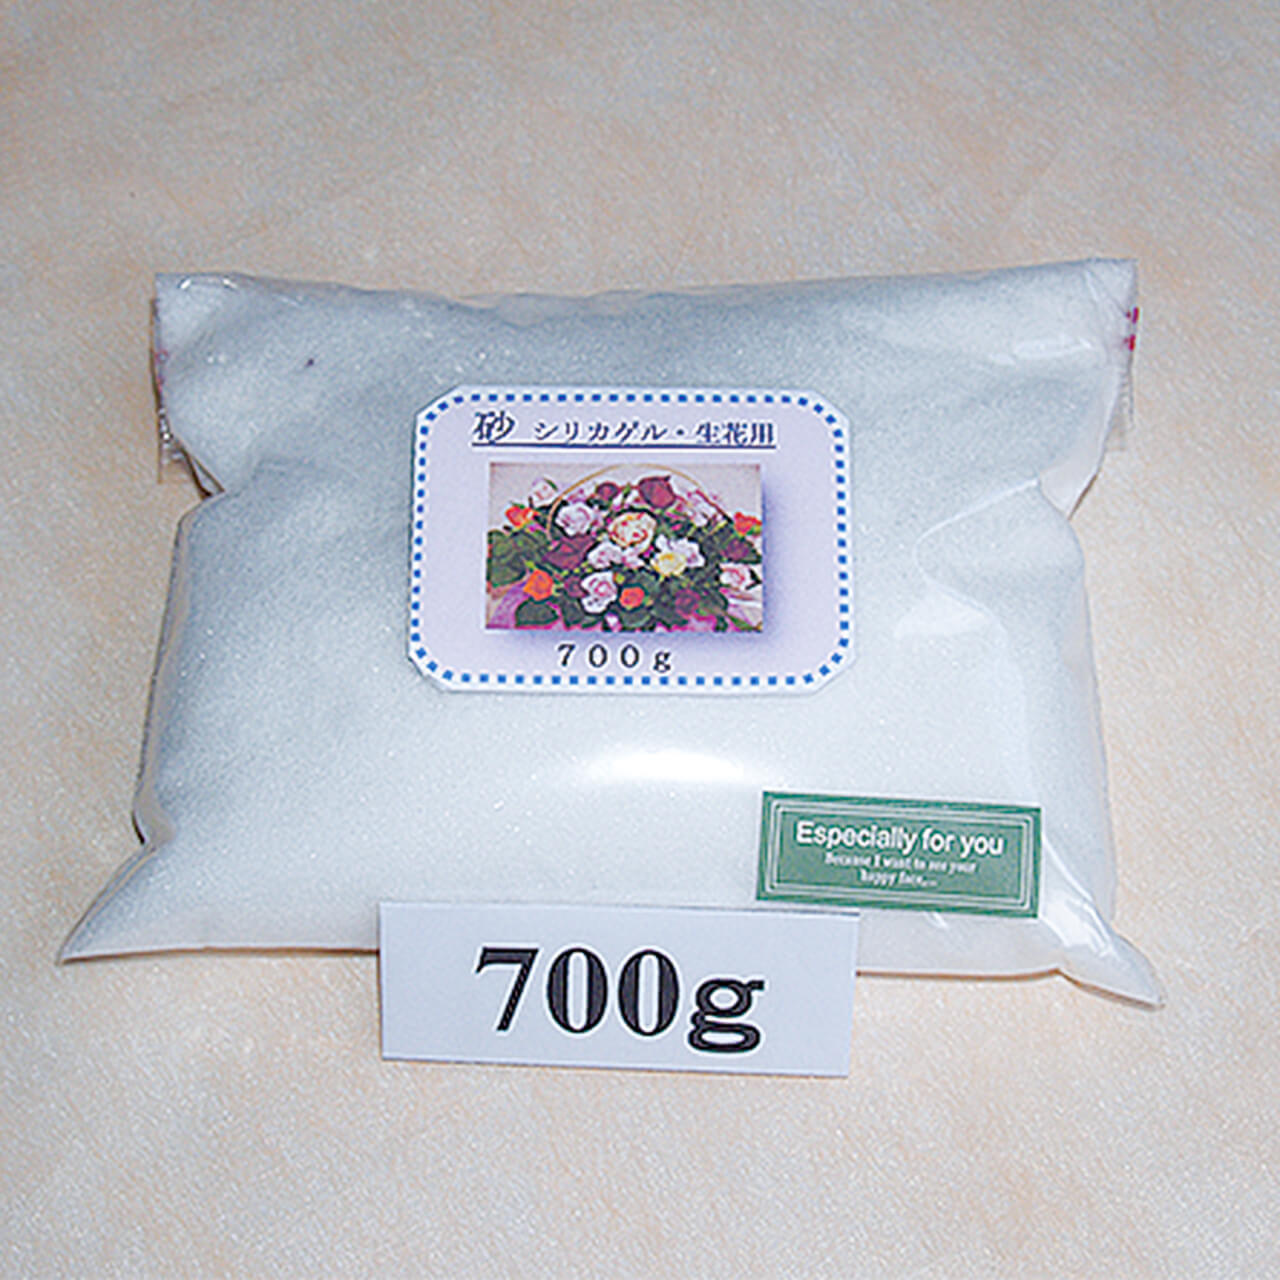 乾燥剤 1 2 生花 乾燥用 砂状シリカゲル 700 ハッピーフルール花工房 ボトルフラワー作成 販売